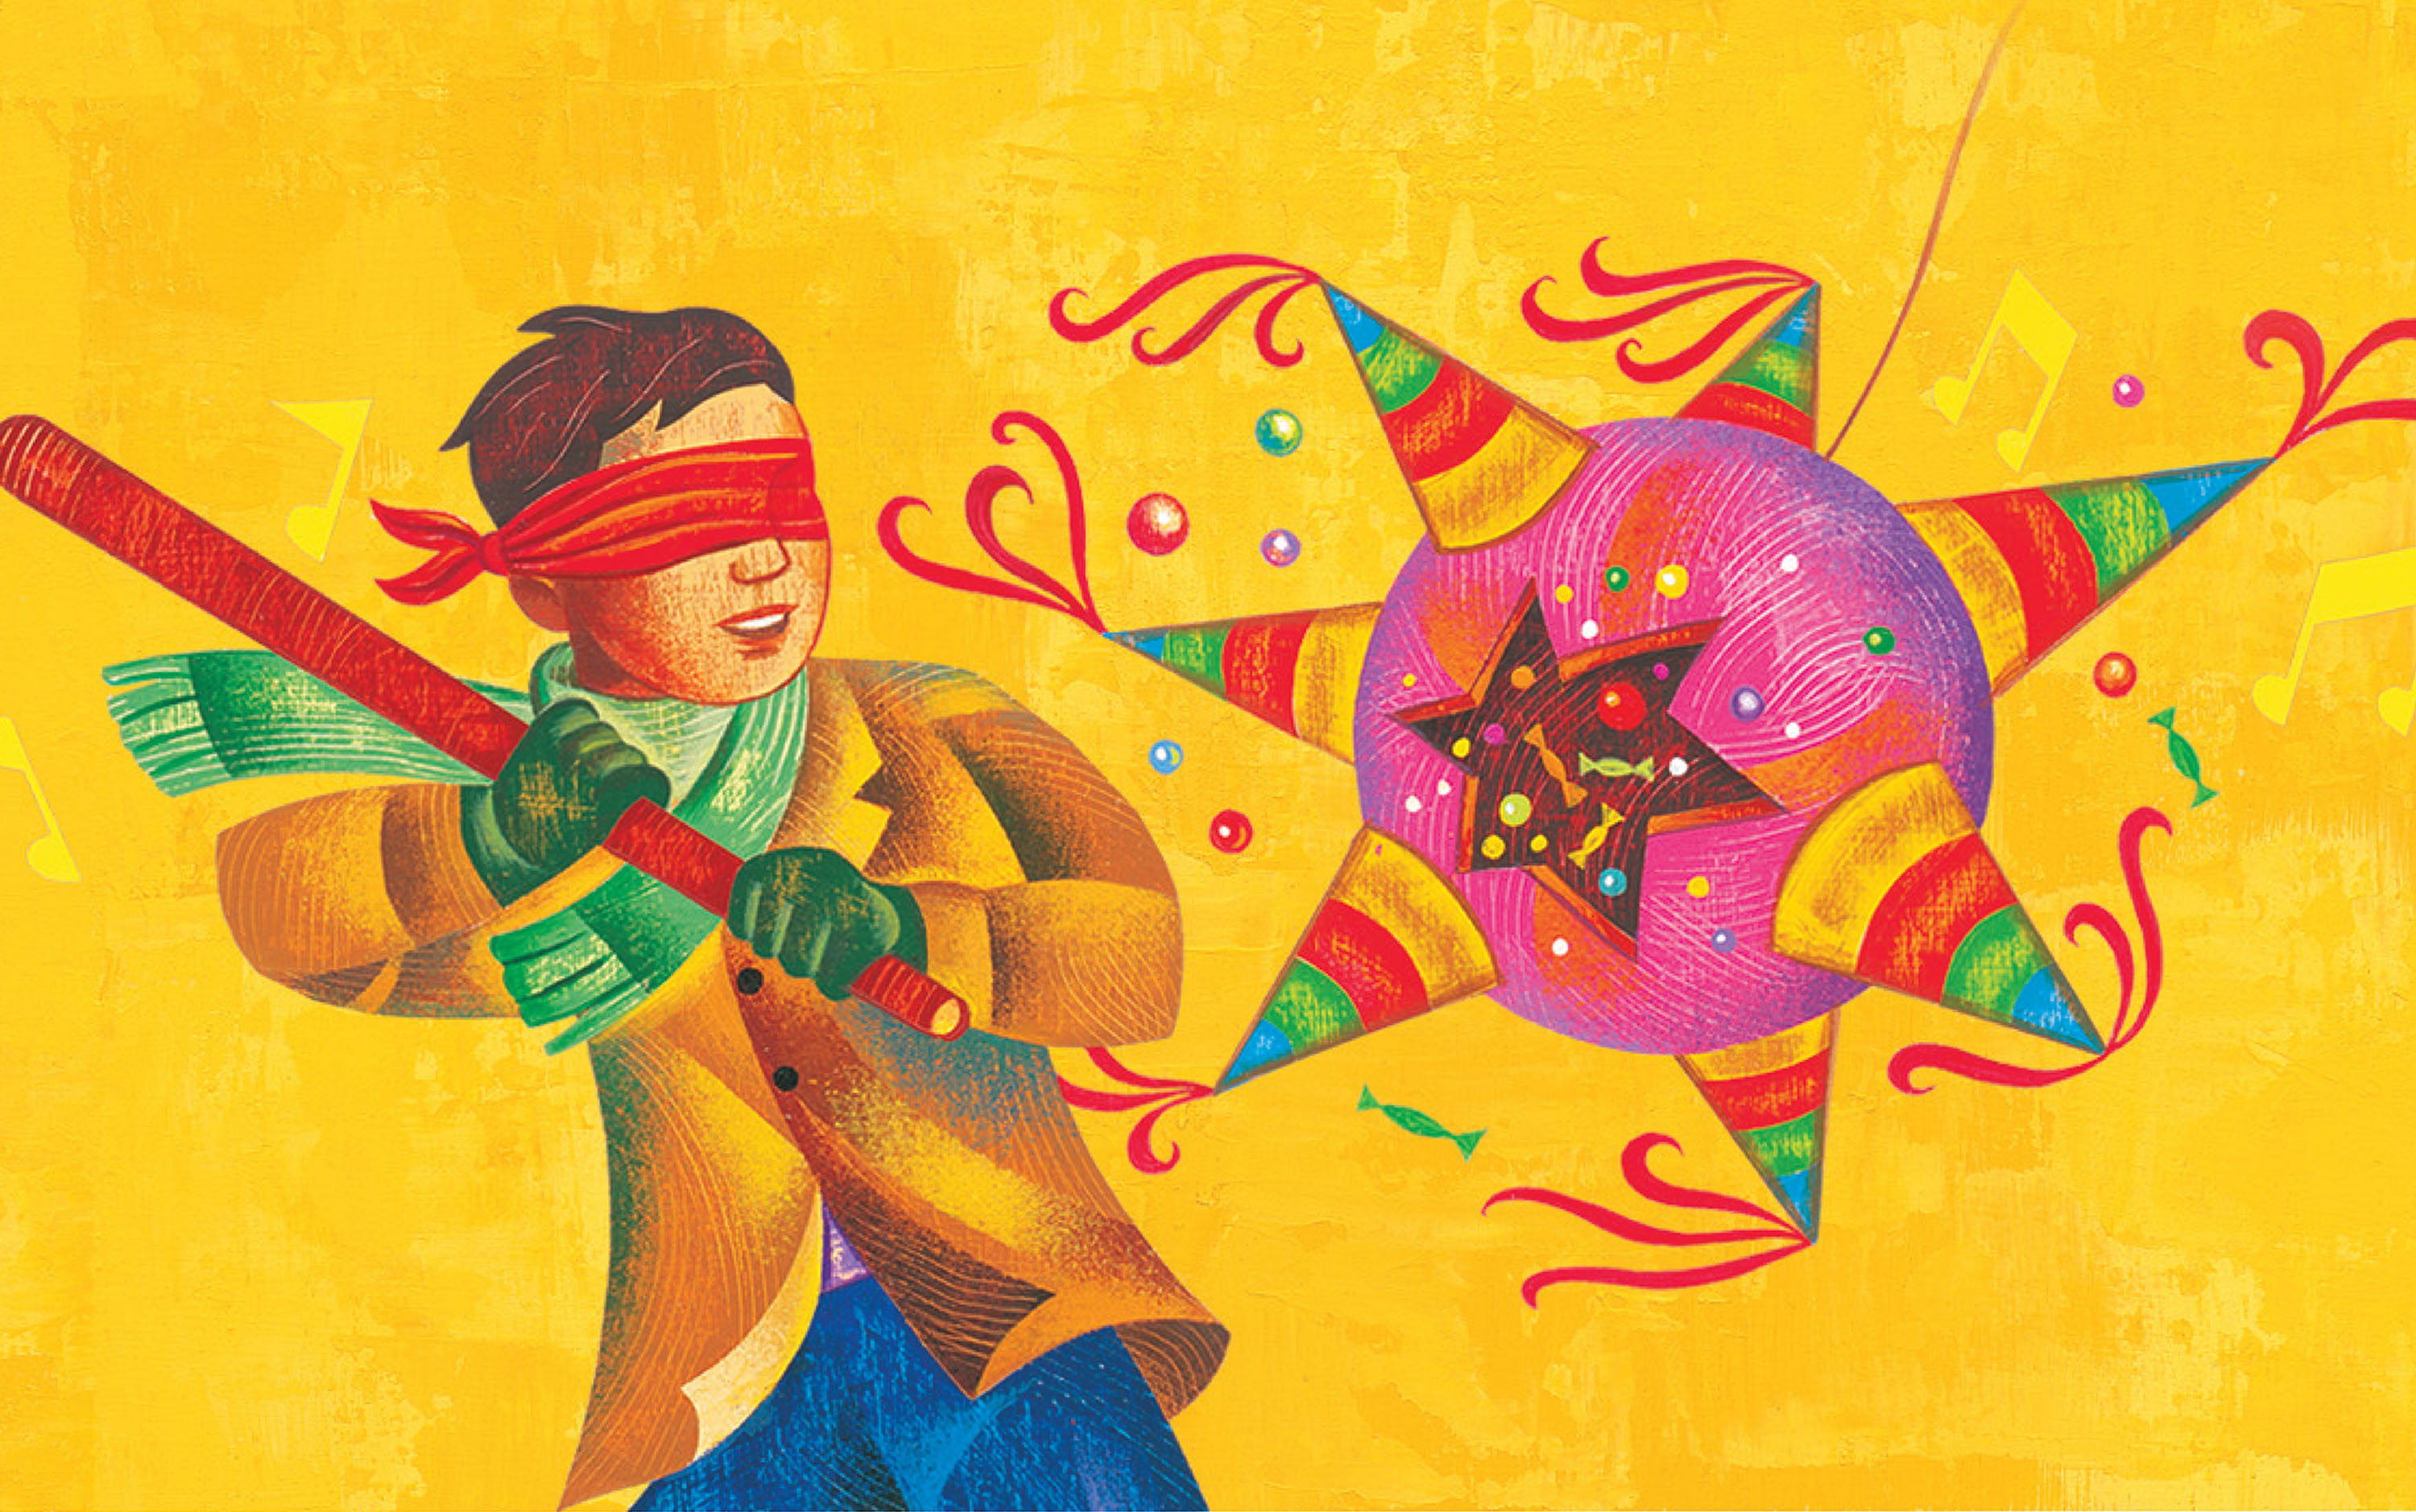 Latino piñata illustration for Gamesa holiday cookies